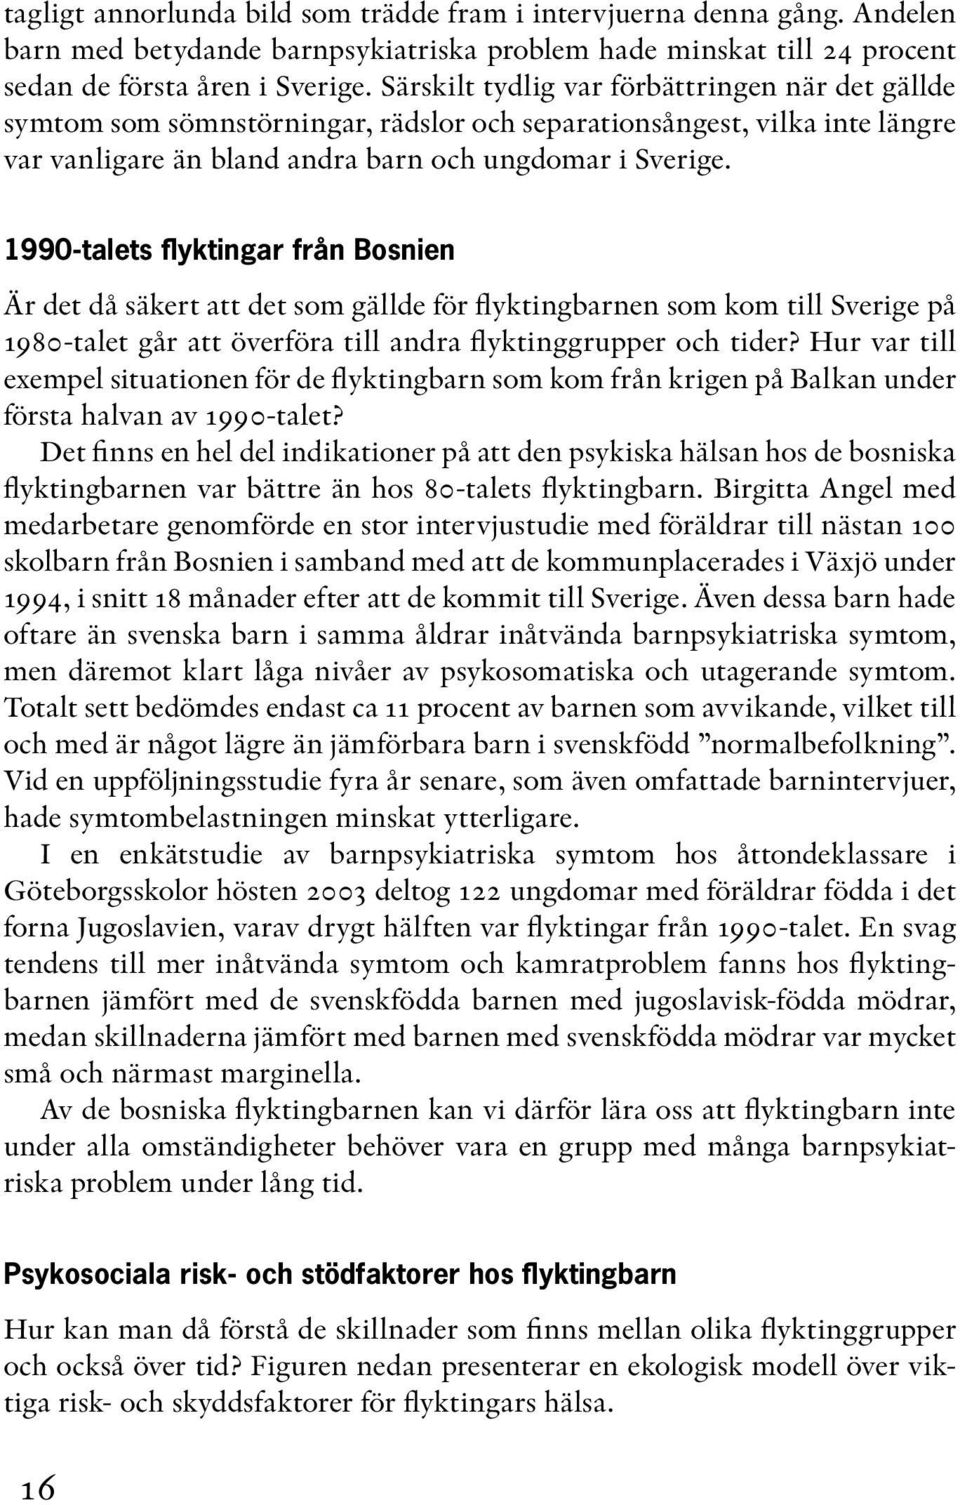 1990-talets flyktingar från Bosnien Är det då säkert att det som gällde för flyktingbarnen som kom till Sverige på 1980-talet går att överföra till andra flyktinggrupper och tider?